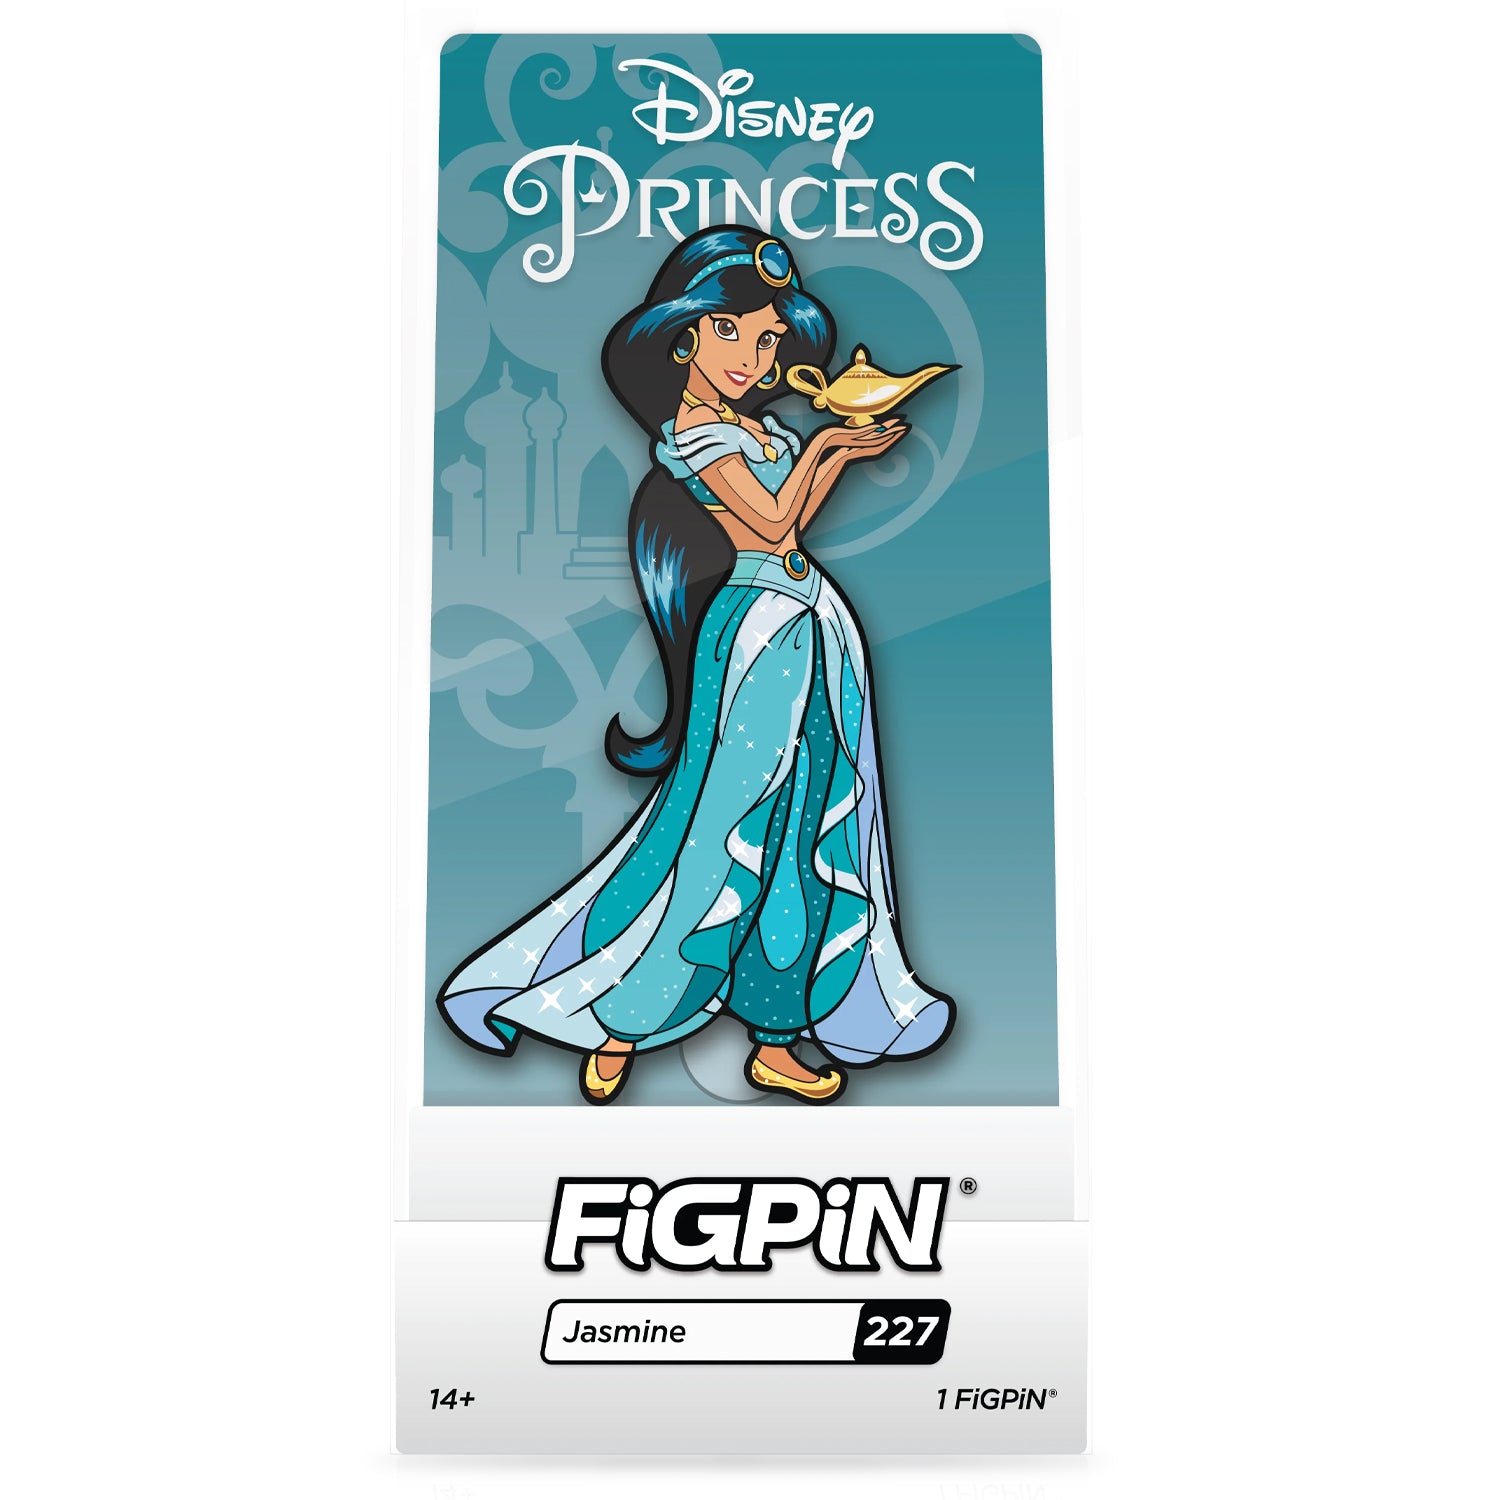 Disney Princess Jasmine 3" Collectible Pin #227